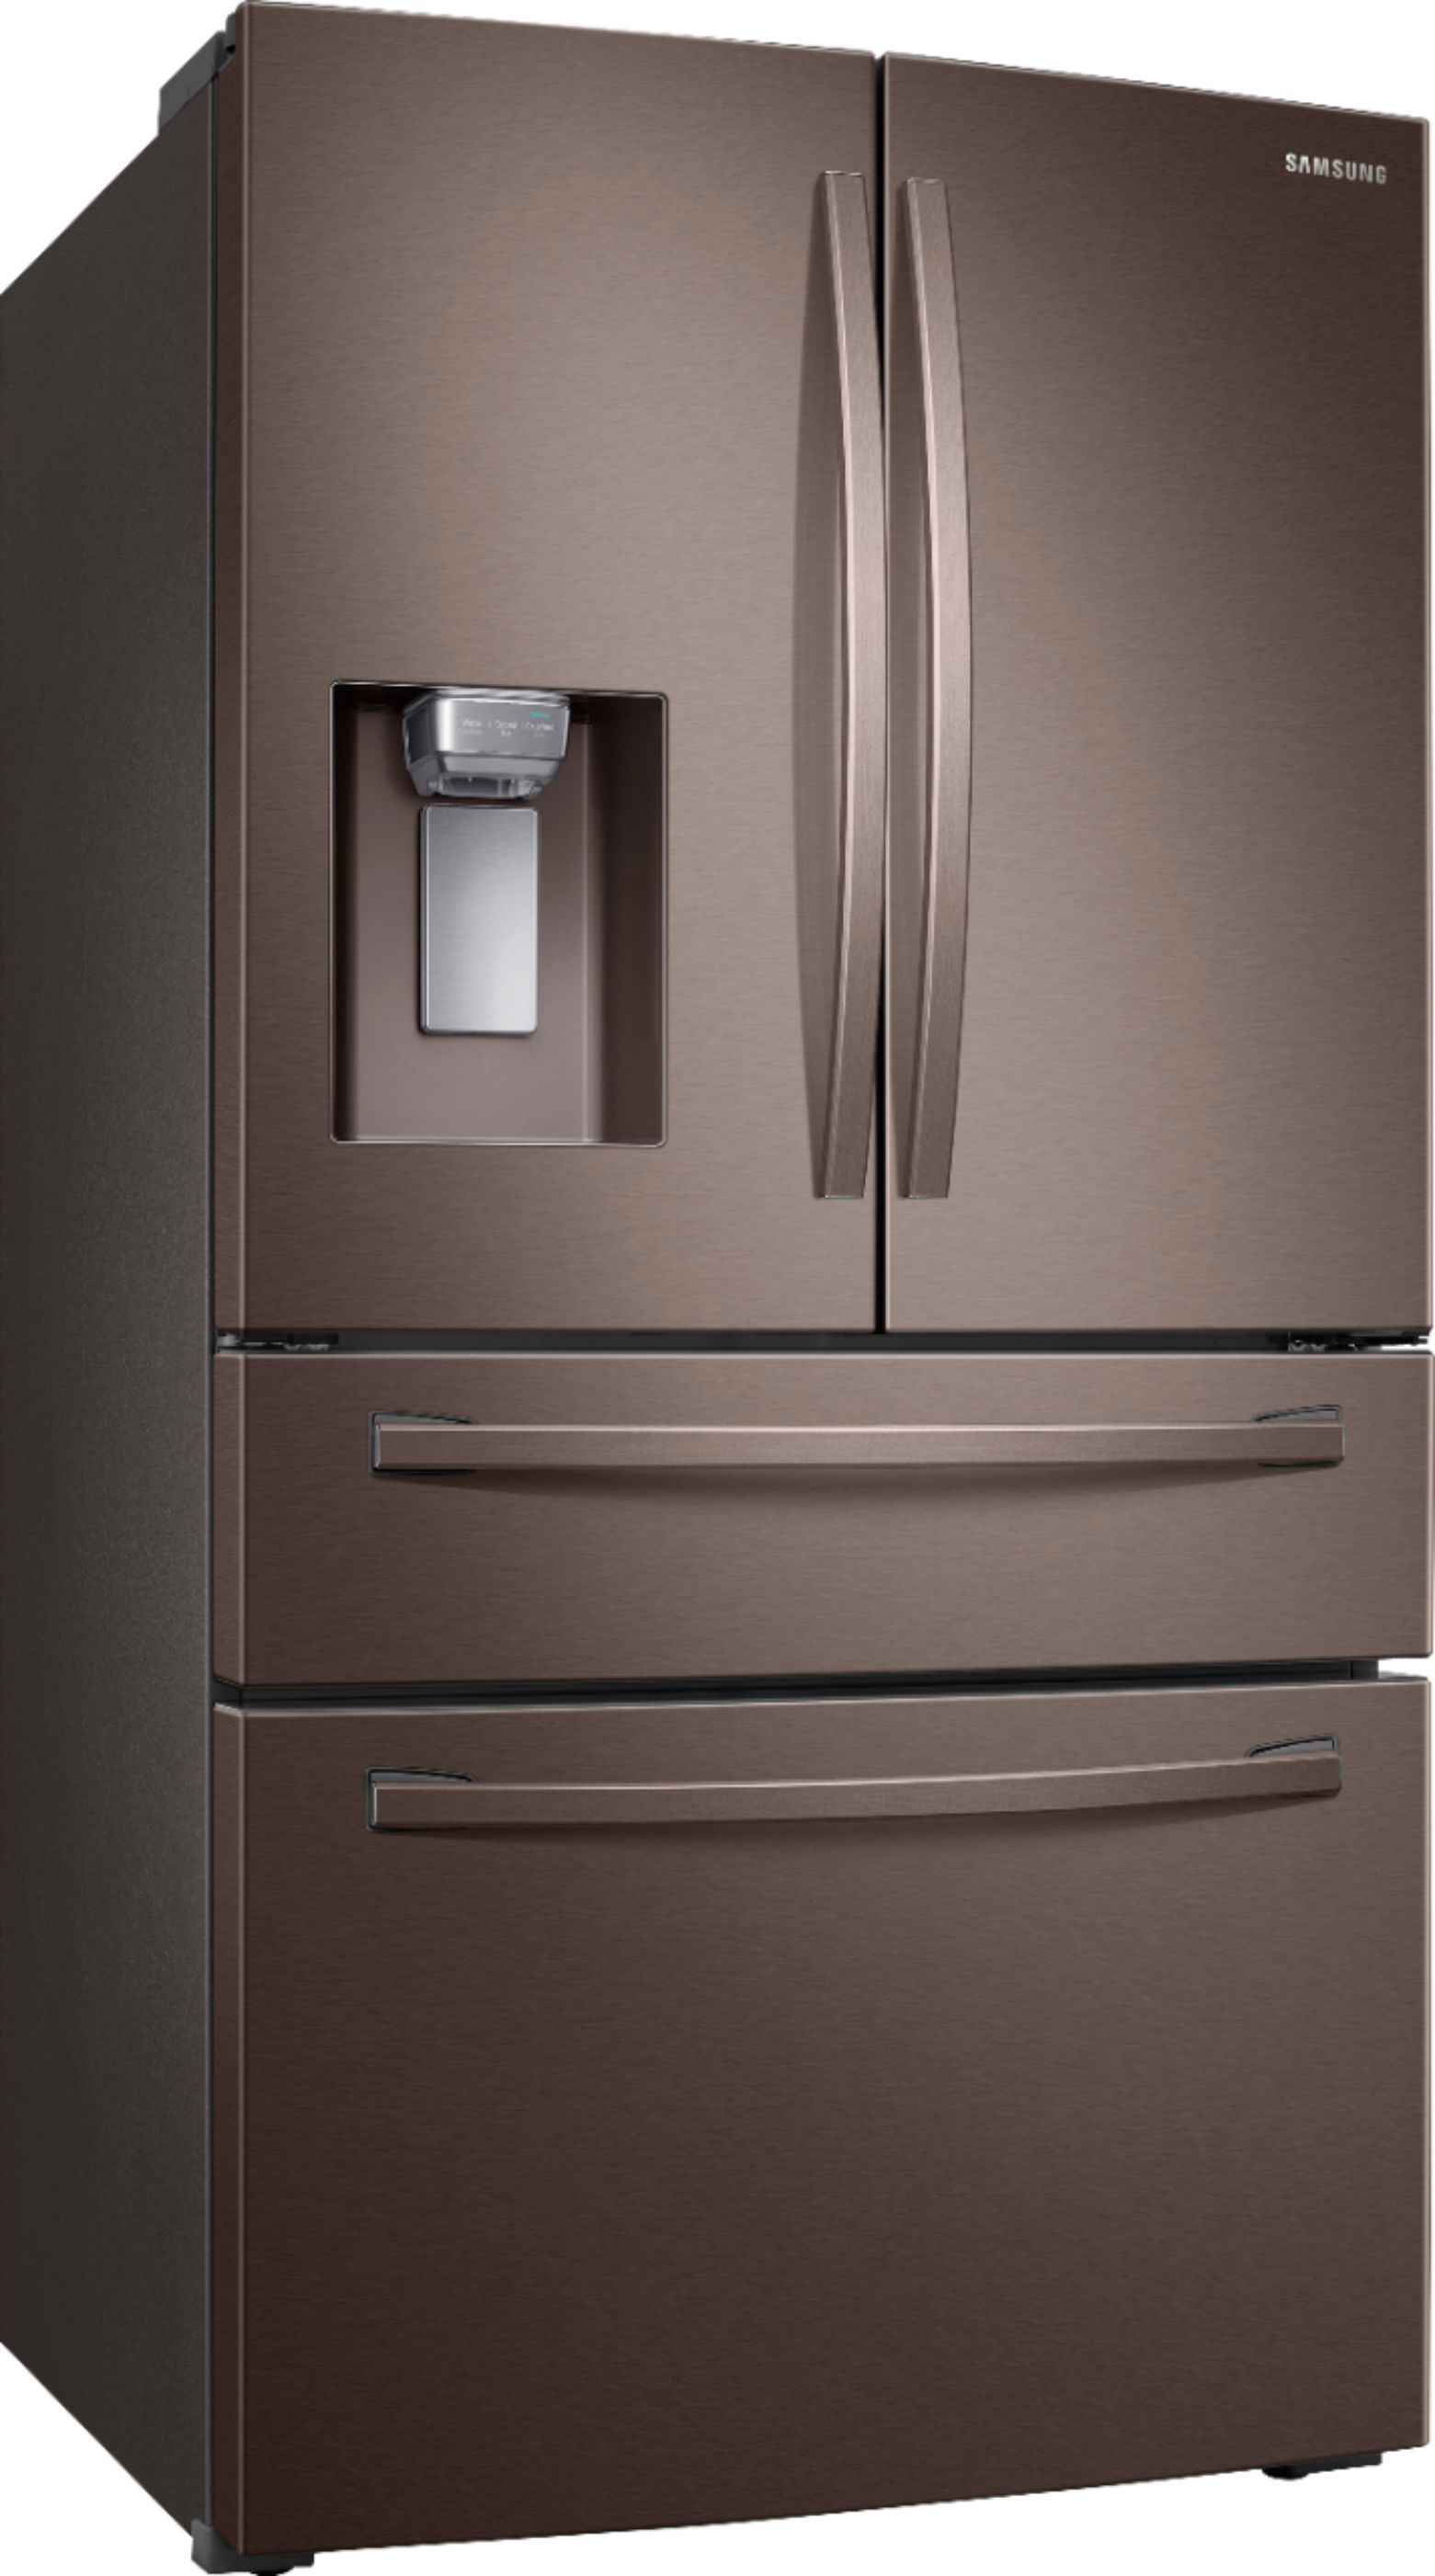 Samsung 28 Cu. Ft. 4-Door French Door Refrigerator Tuscan Stainless Samsung Fridge Tuscan Stainless Steel